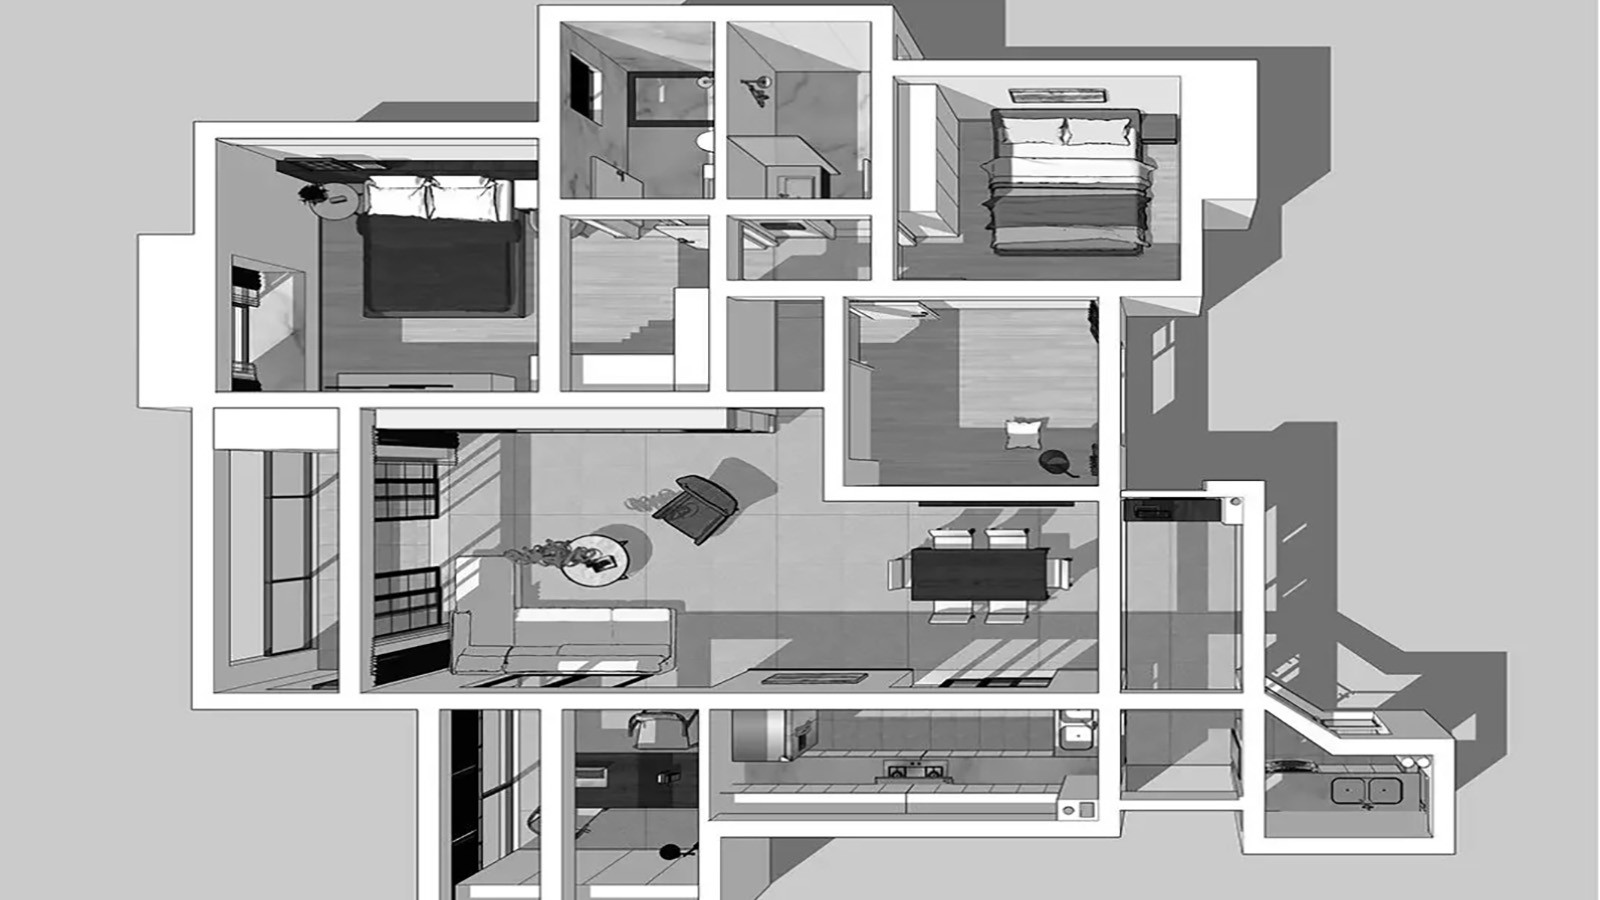 112现代两房装修效果图,优美的室内环境。装修案例效果图-美广网(图1)